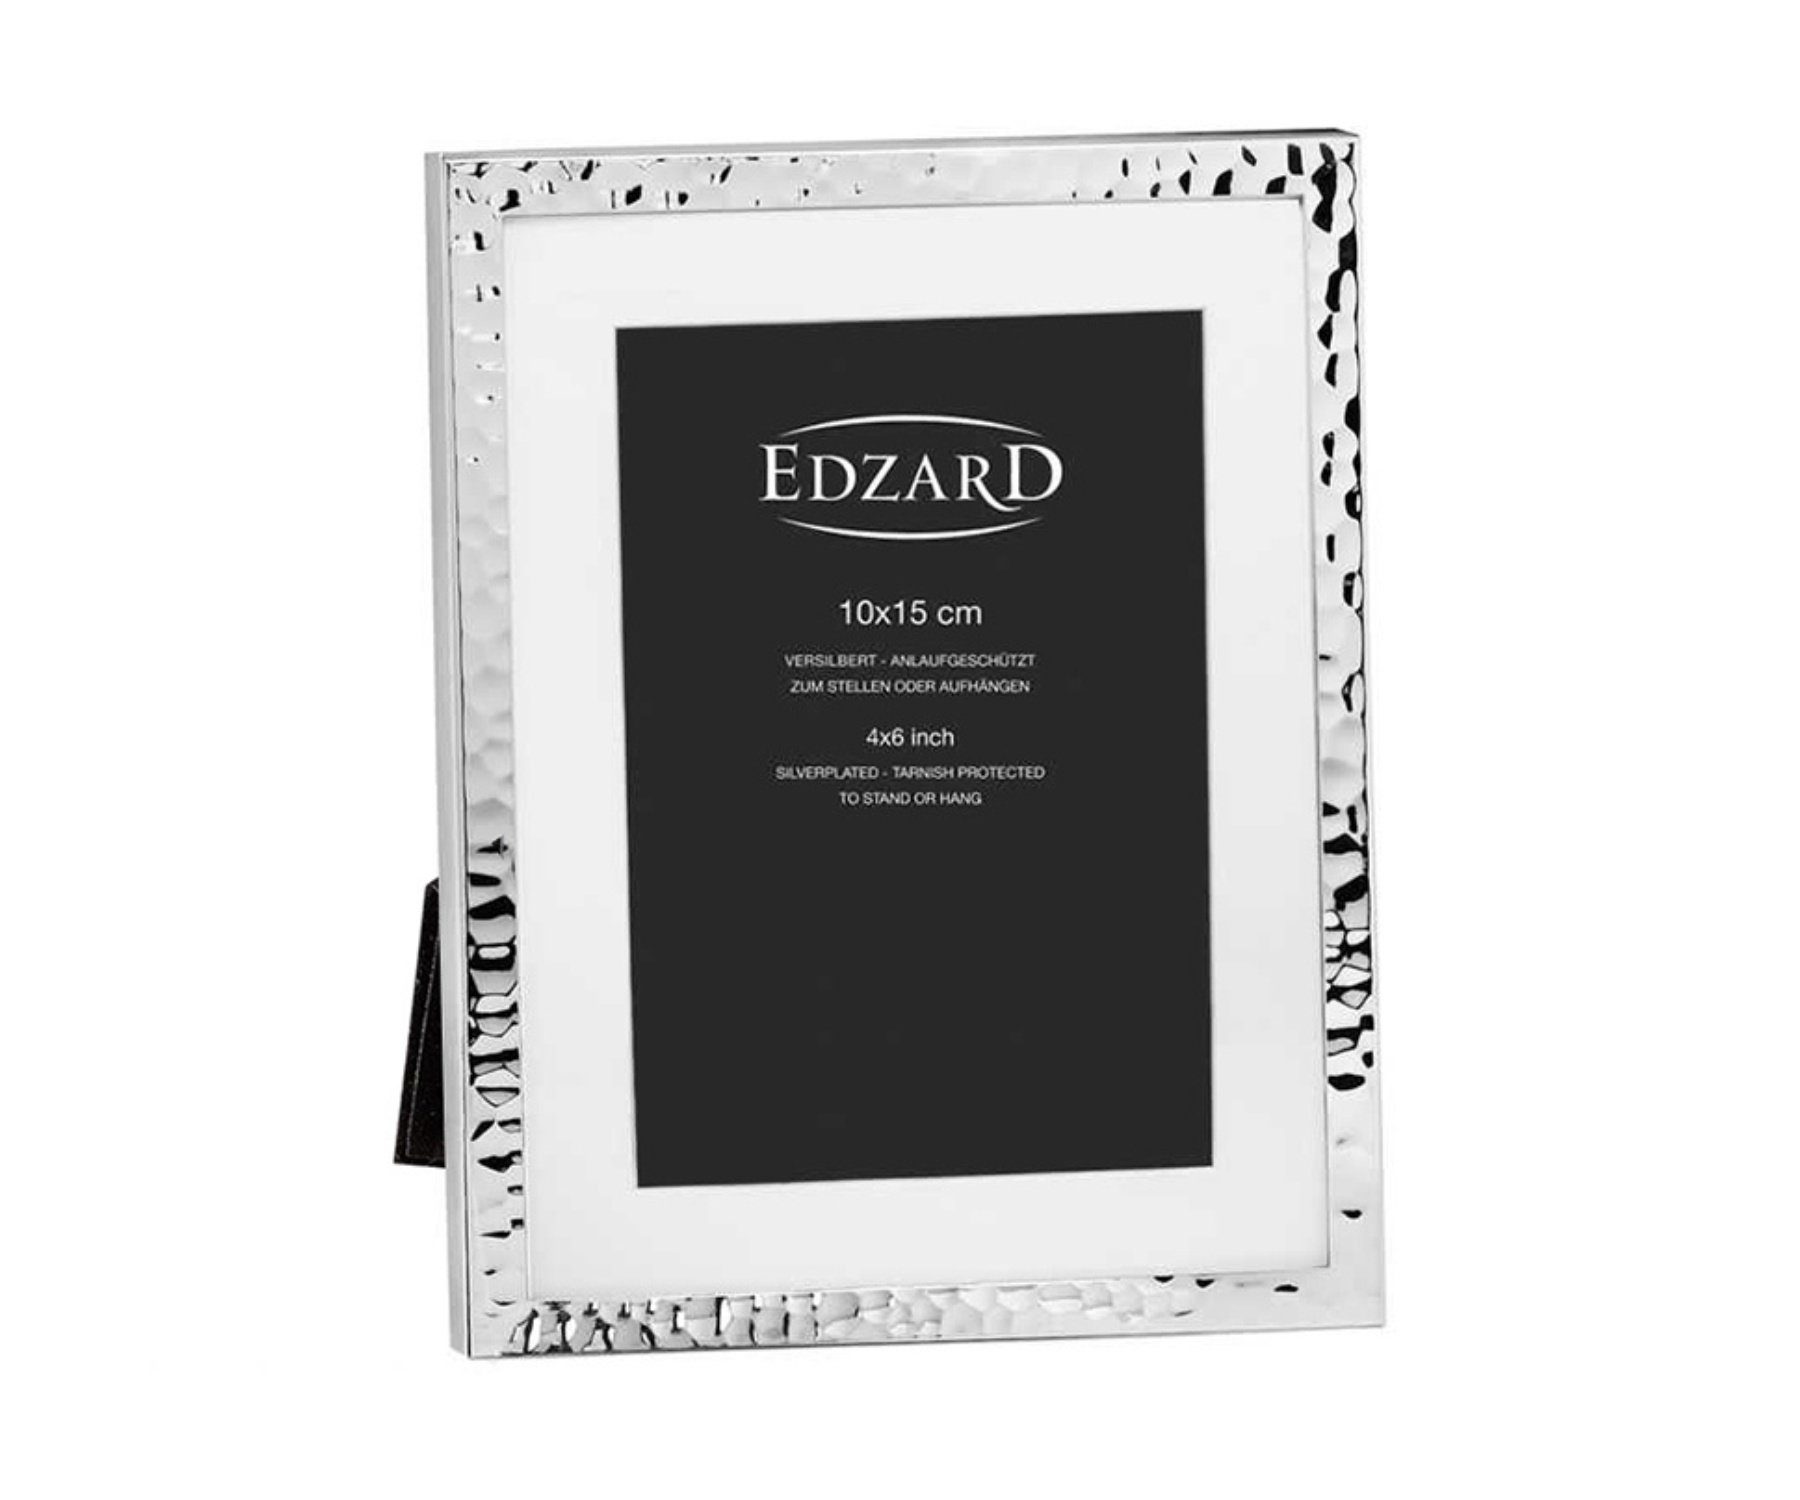 EDZARD Bilderrahmen Fano, versilbert und anlaufgeschützt, für 10x15 cm Foto  - Passepartout Fotorahmen - Rahmen für Foto zum Hinstellen und Aufhängen